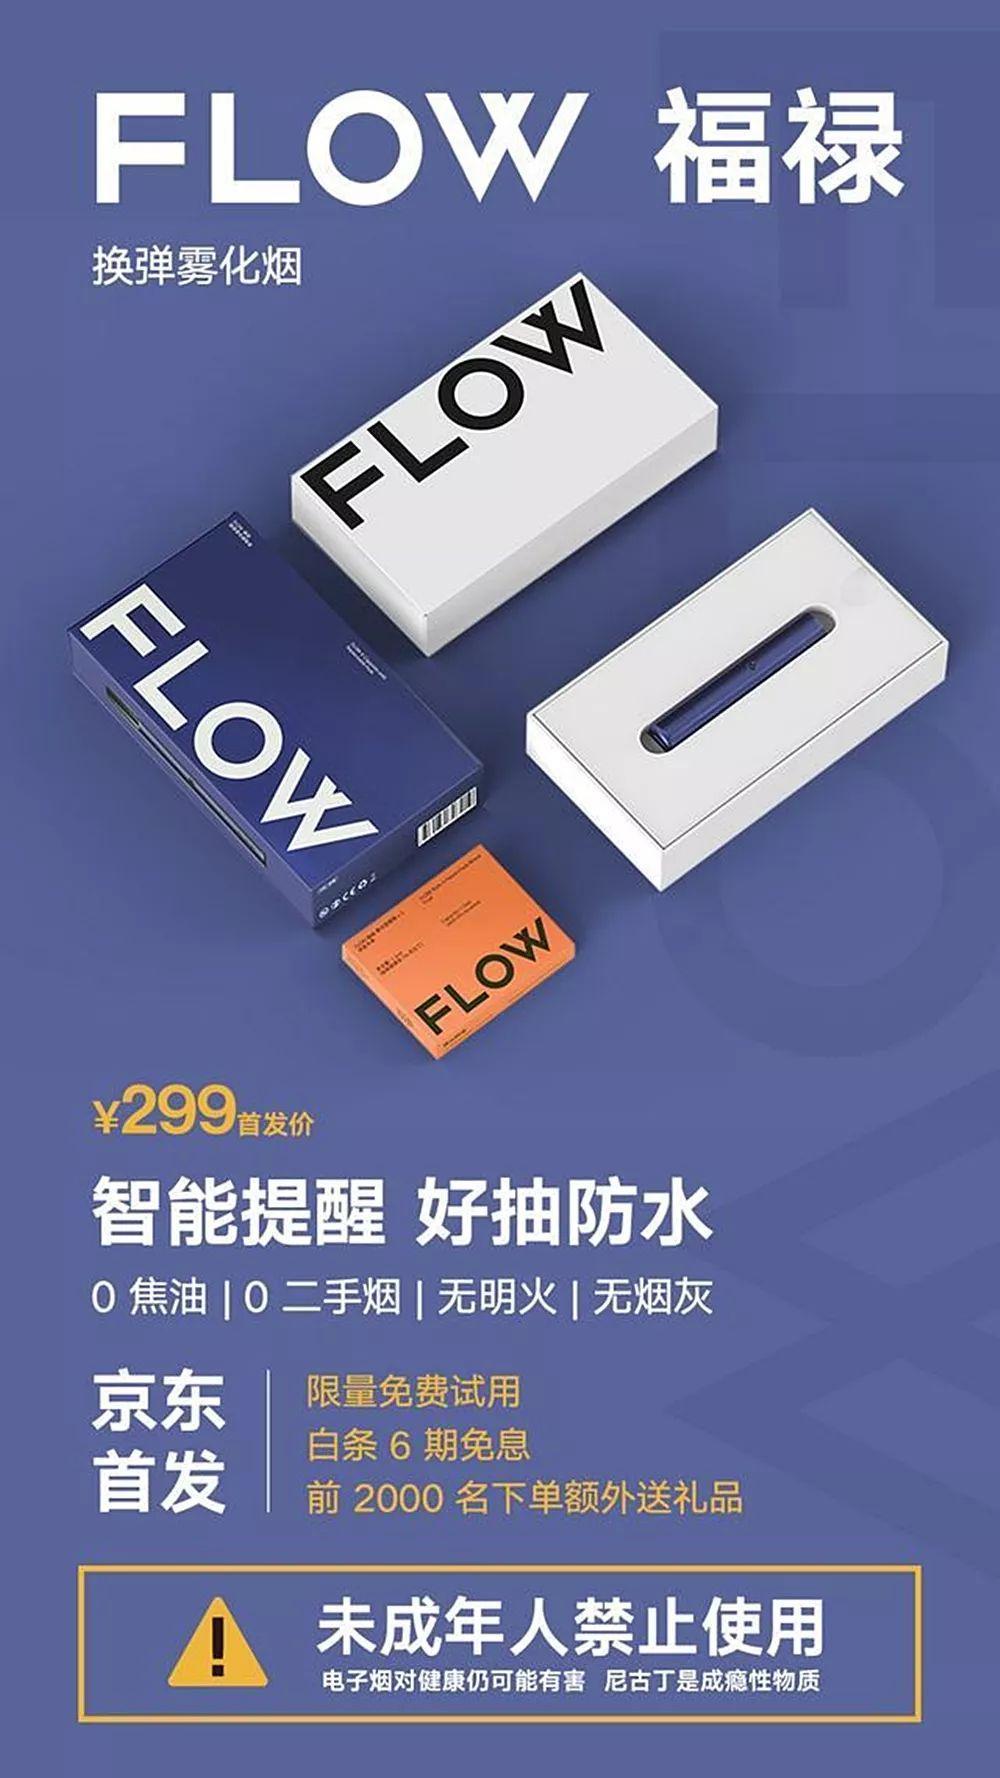 flow福禄电子烟首发,京东平台正式开售